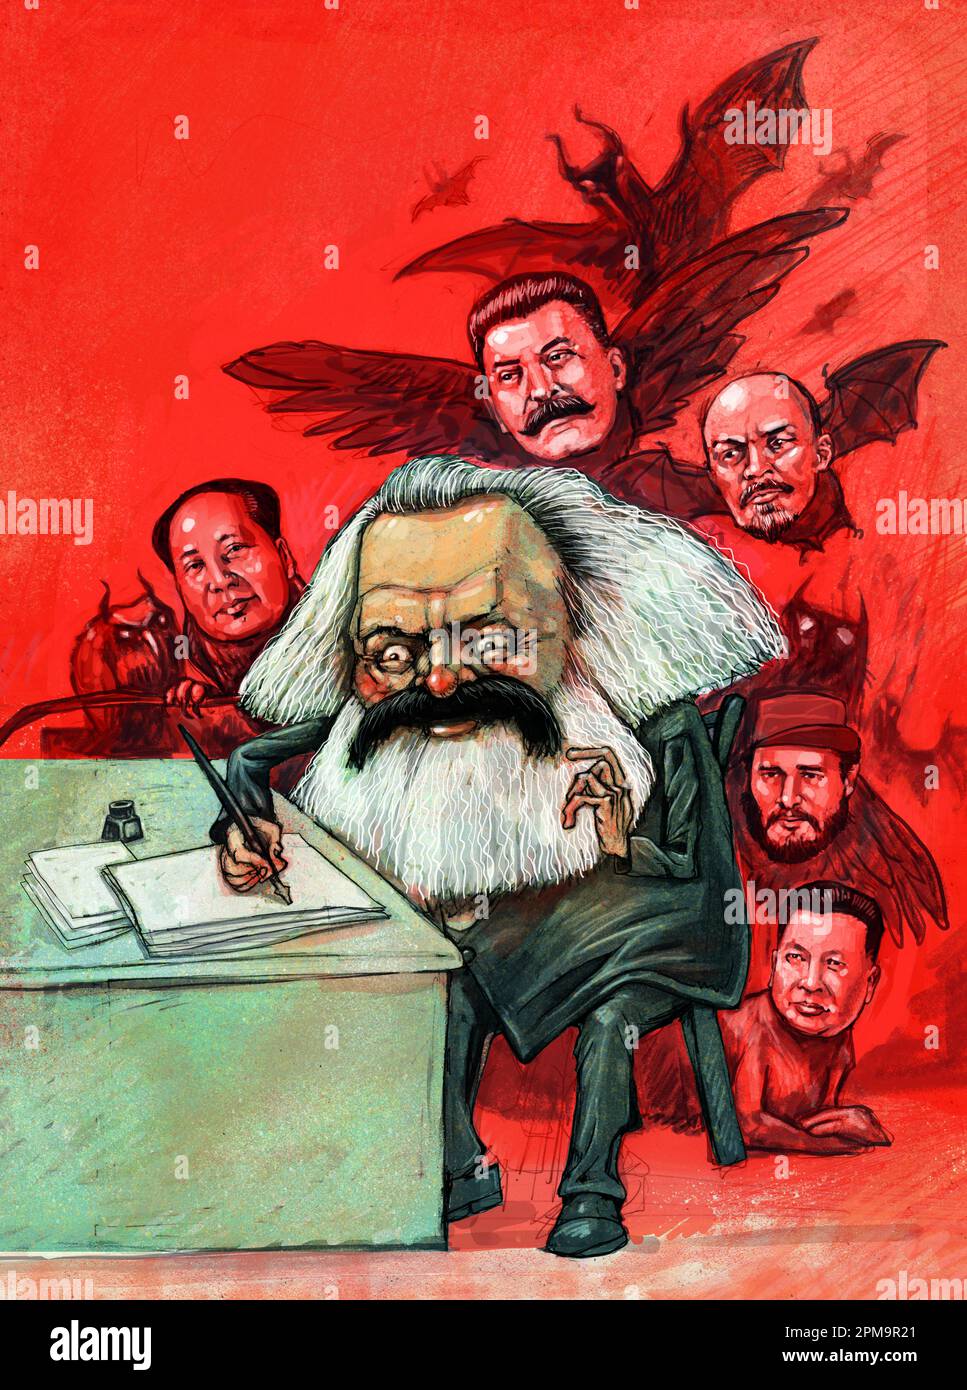 Kunst des Philosophen, Karl Marx schreibt kommunistisches Manifest. Dahinter jene, die von seiner Arbeit beeinflusst werden würden: Mao, Stalin, Lenin, Castro, Kim Jong-il Stockfoto